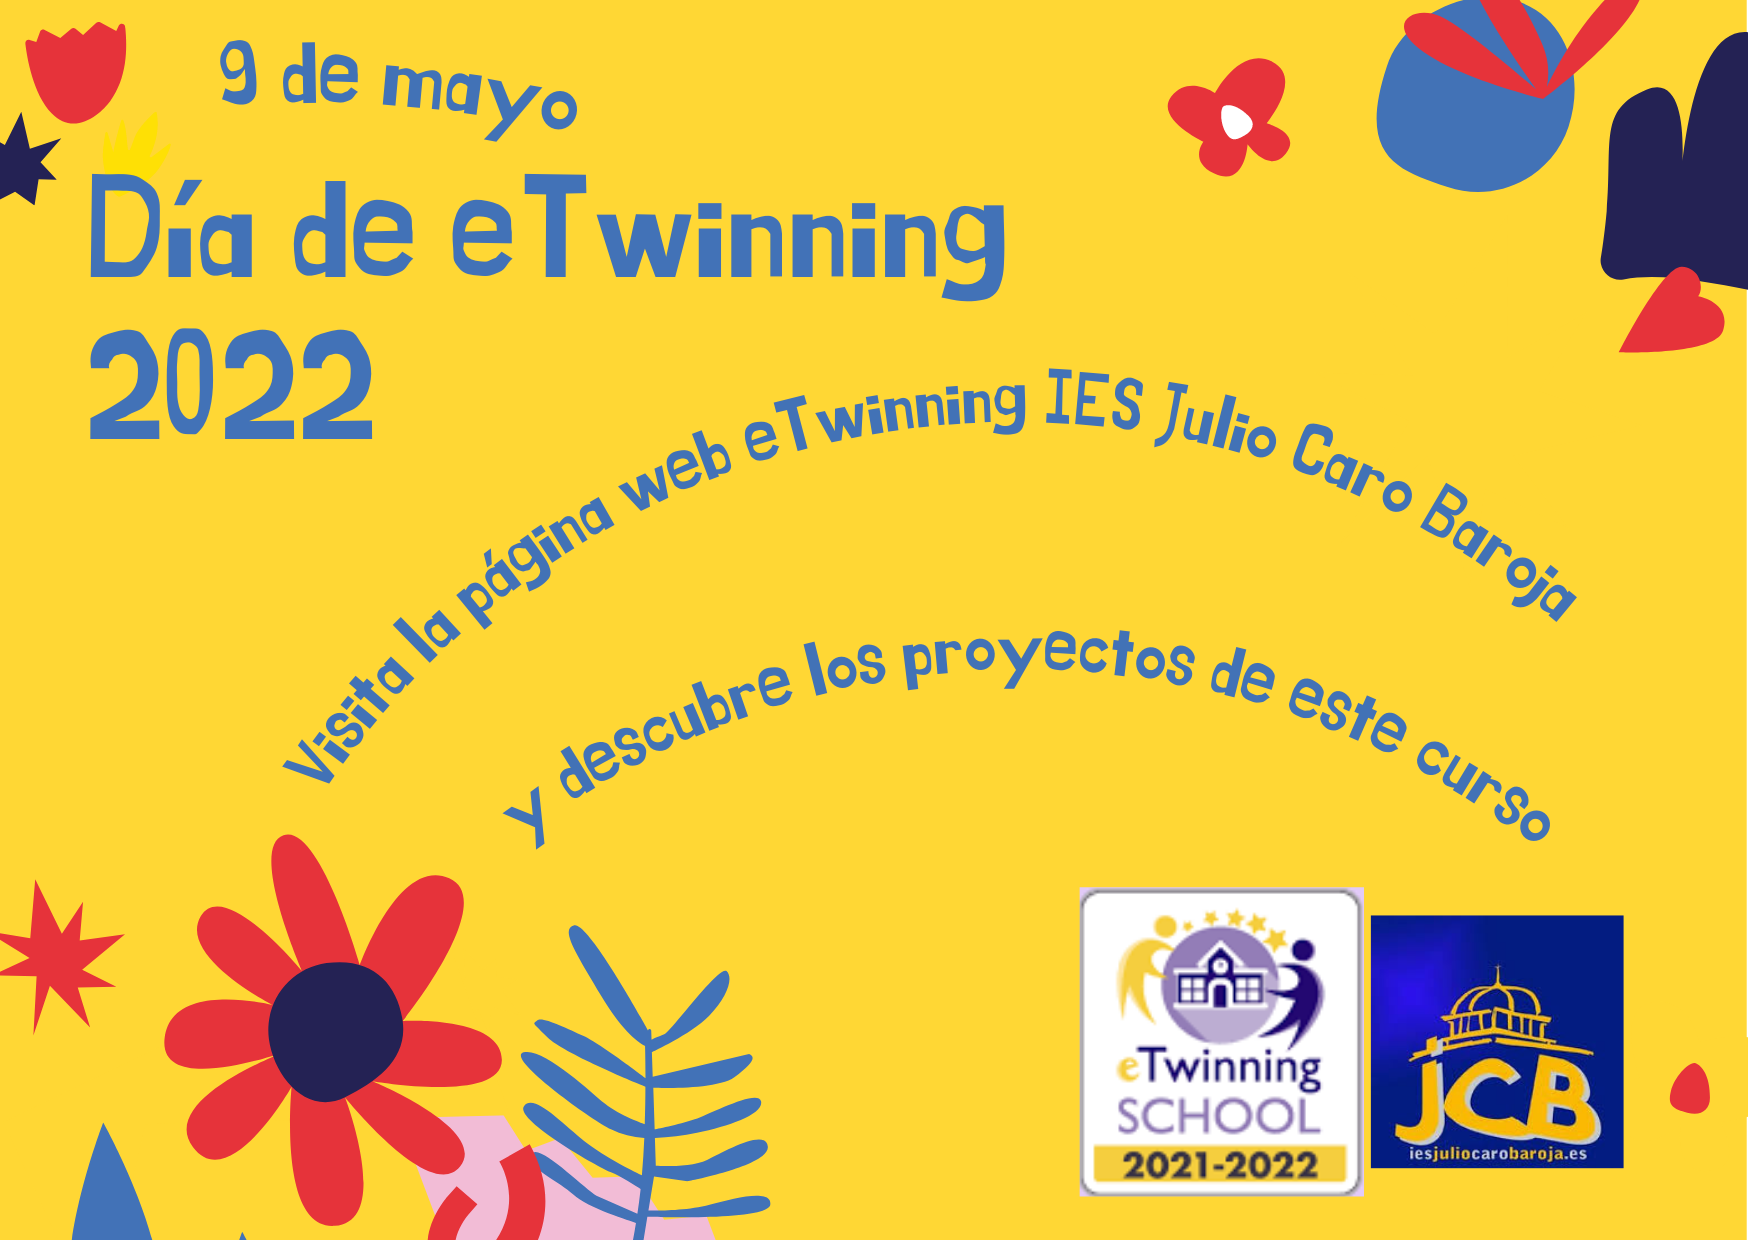 El IES Julio Caro Baroja de Pamplona organiza el «Día de eTwinning 2022» con motivo de la celebración del Día de Europa (9 de mayo)